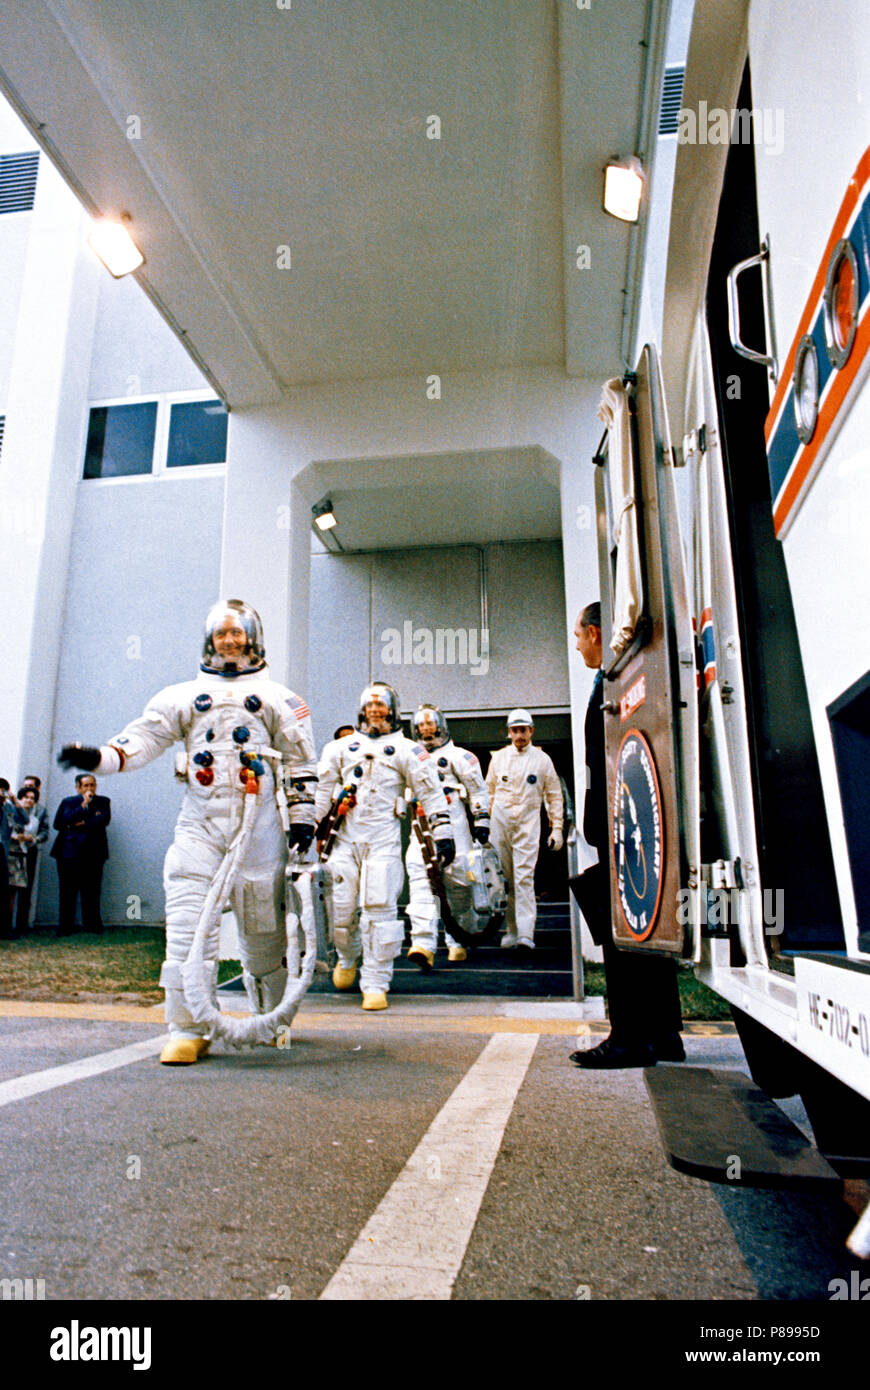 Vom 3. März 1969 - Apollo 9 Crew verlässt Kennedy Space Center bemannte Raumfahrzeuge Operationen Geb. für Apollo 9 prelaunch Countdown. Führende ist James A. McDivitt, gefolgt von David R. Scott, und Russell L. Schweicka Stockfoto